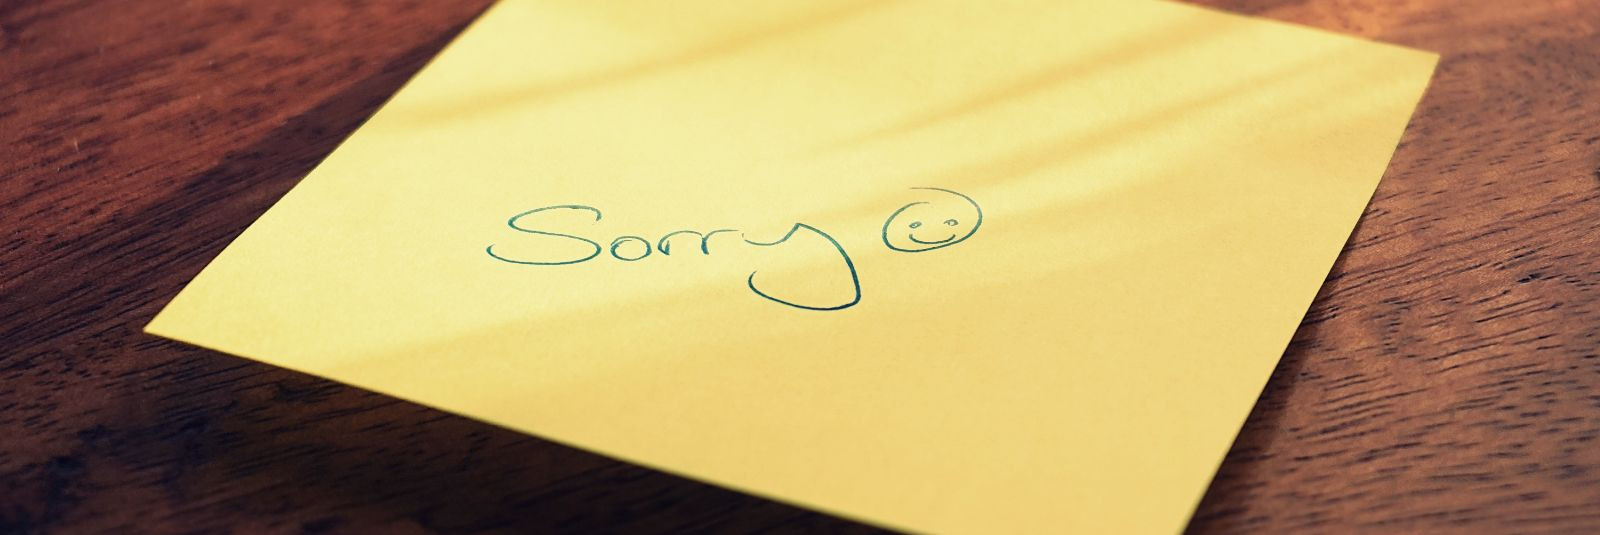 Mõned inimesed võivad vabandada vaid väikeste juhuslike eksimuste eest, kuid ei taha kunagi vabandada, kui nad on kellegile teisele teadlikult või tahtmatult ha